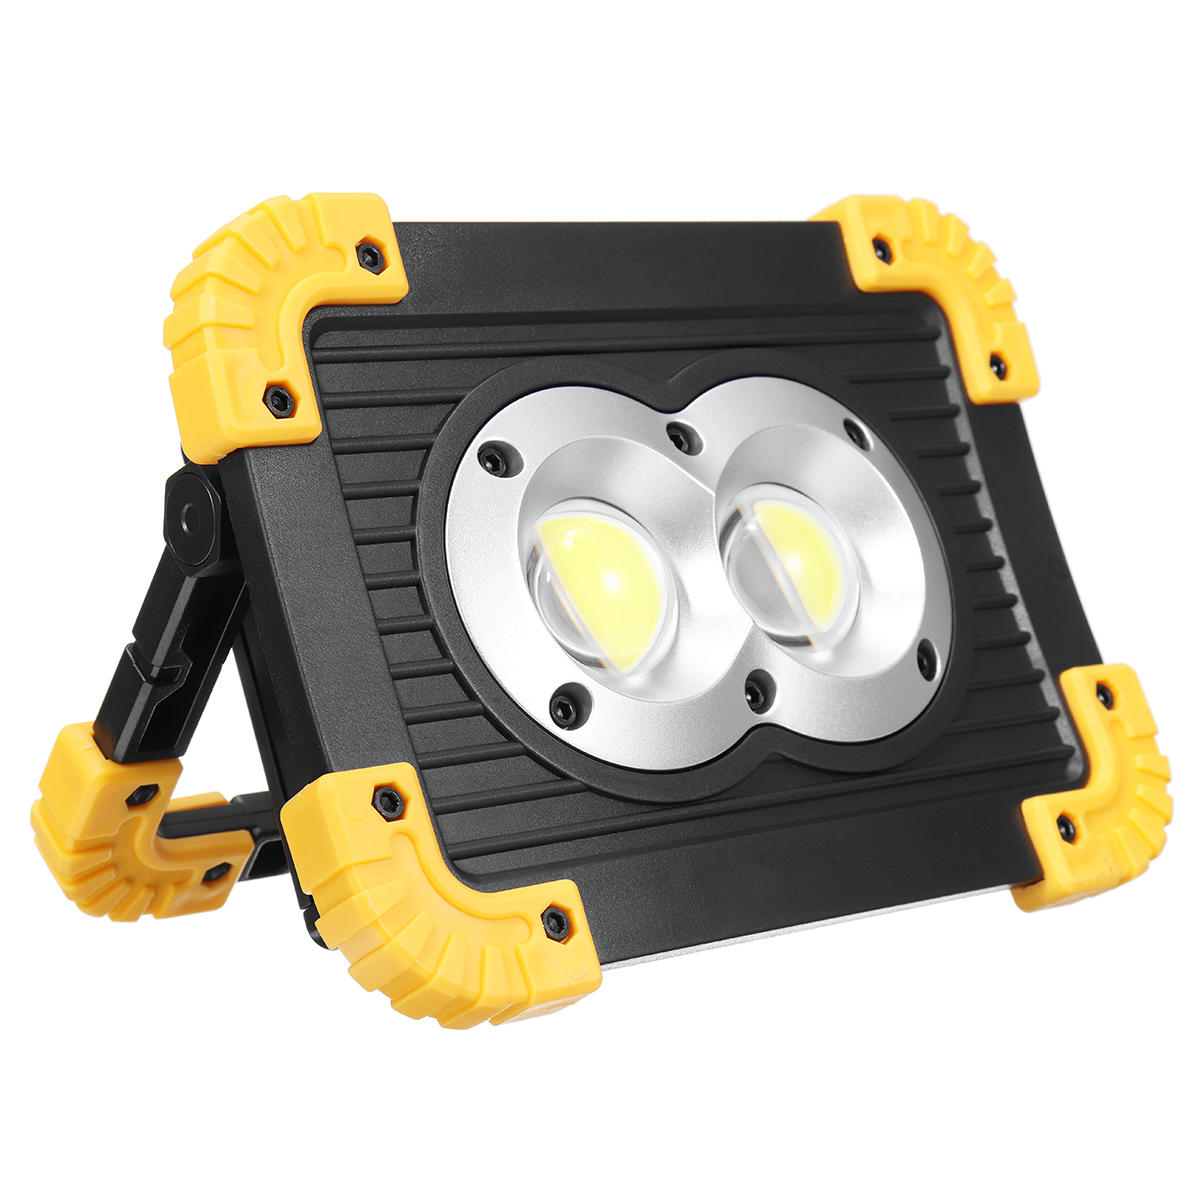 مصباح عمل LED COB المحمول بقوة 20 وات مع USB للاستخدام في الهواء الطلق والتخييم وحالات الطوارئ.